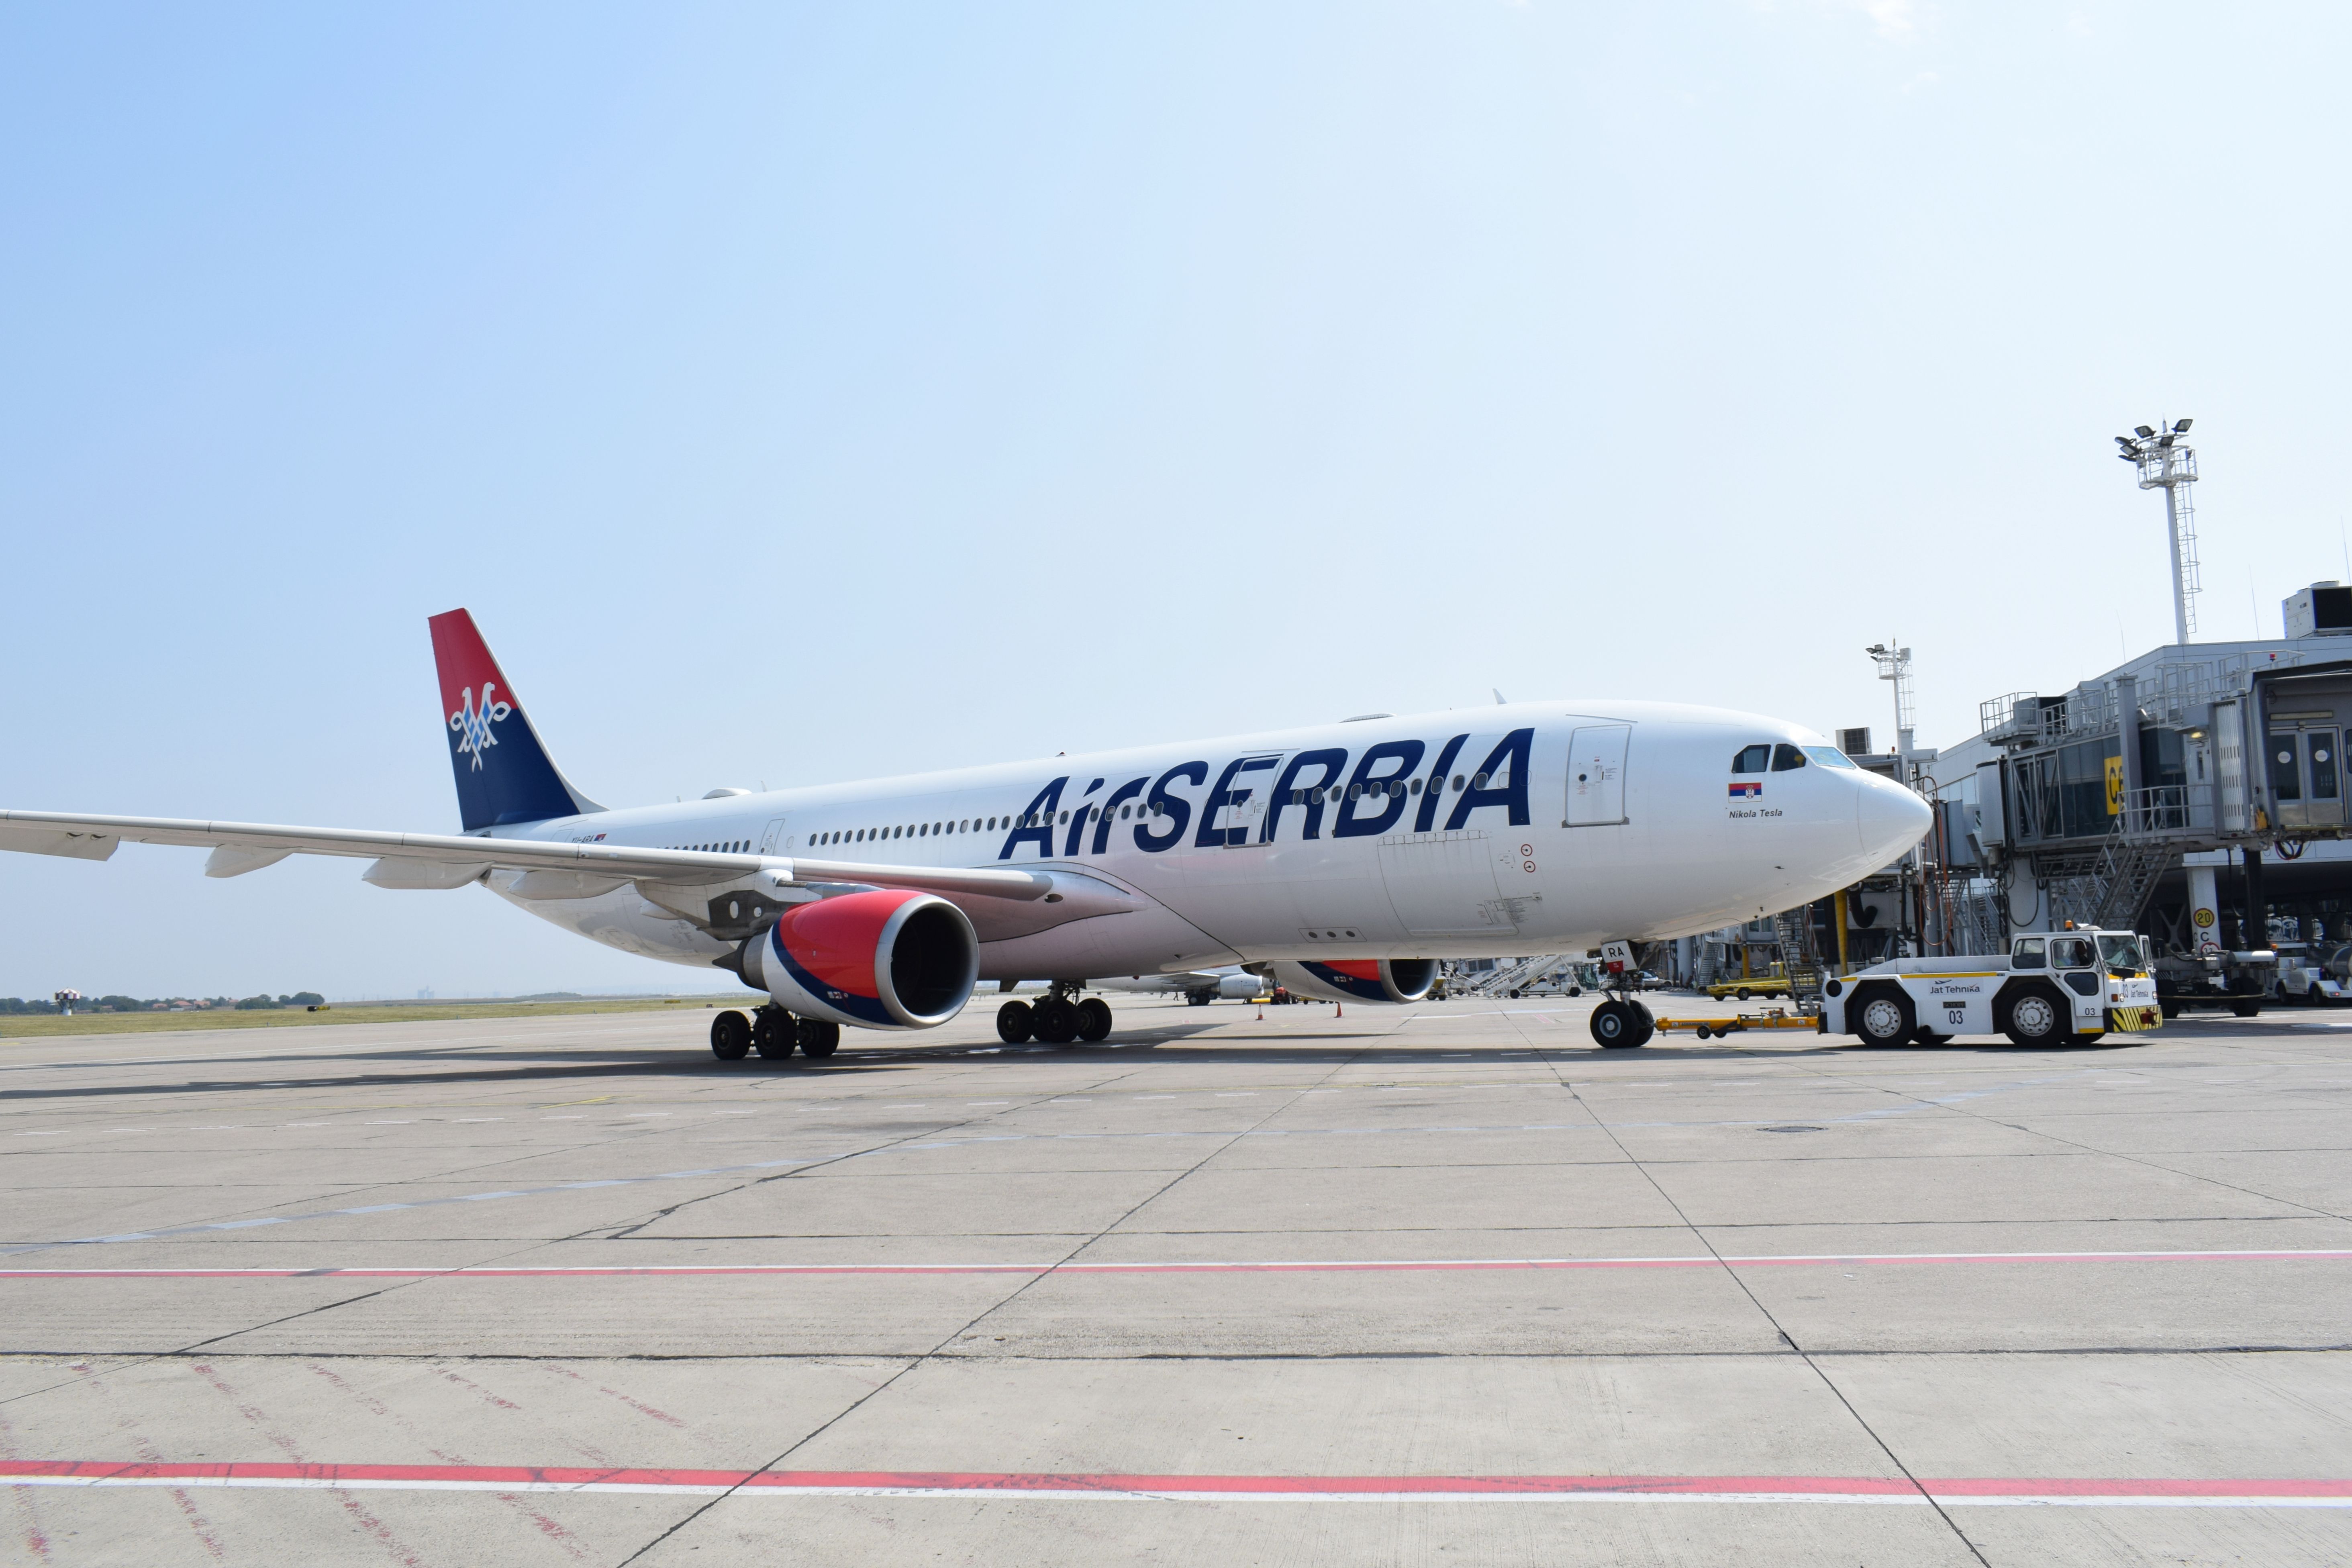 An Air Serbia aircraft parked at Belgrade Airport